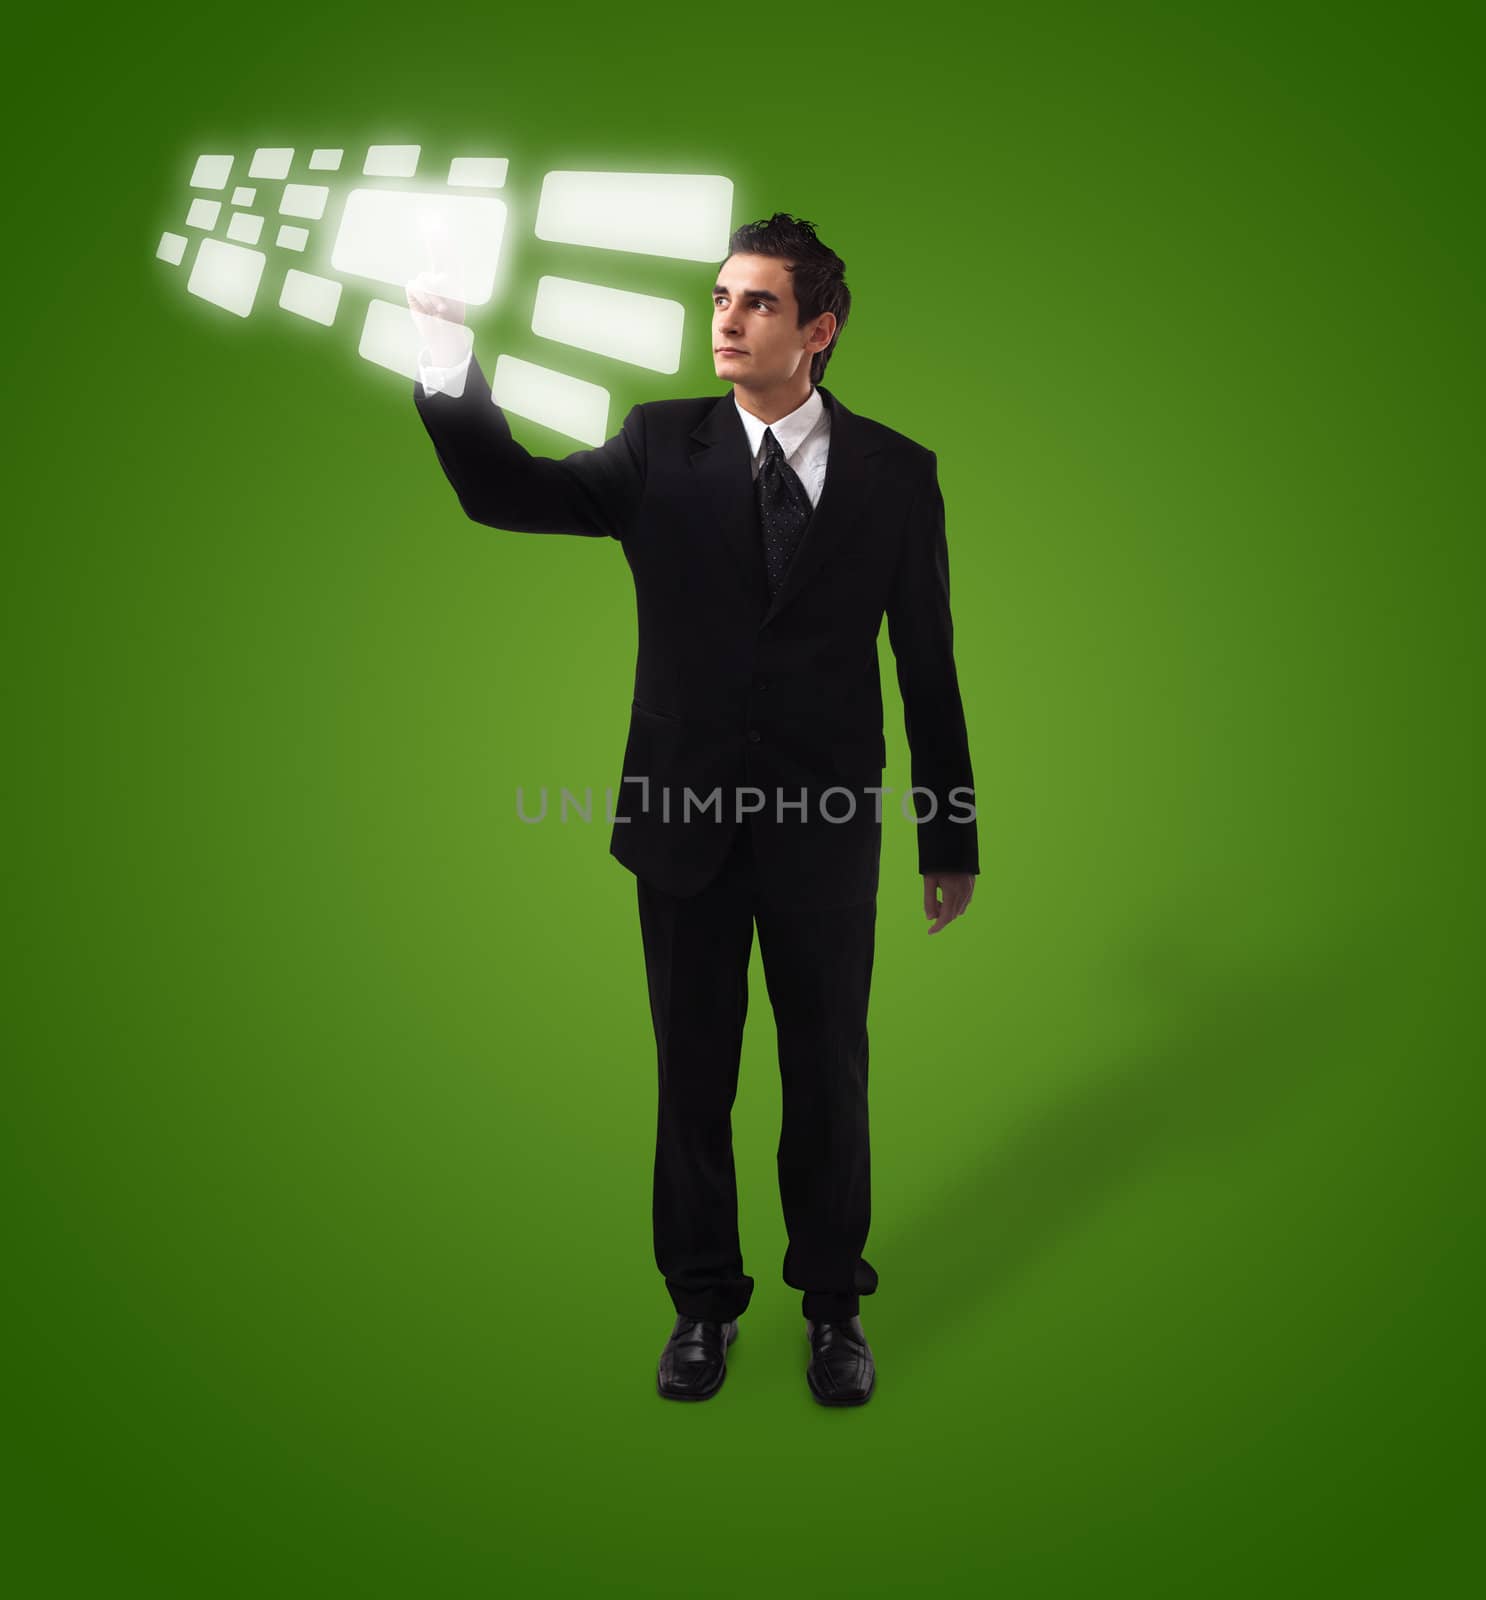 Business man pressing a touchscreen button, futuristic digital technology